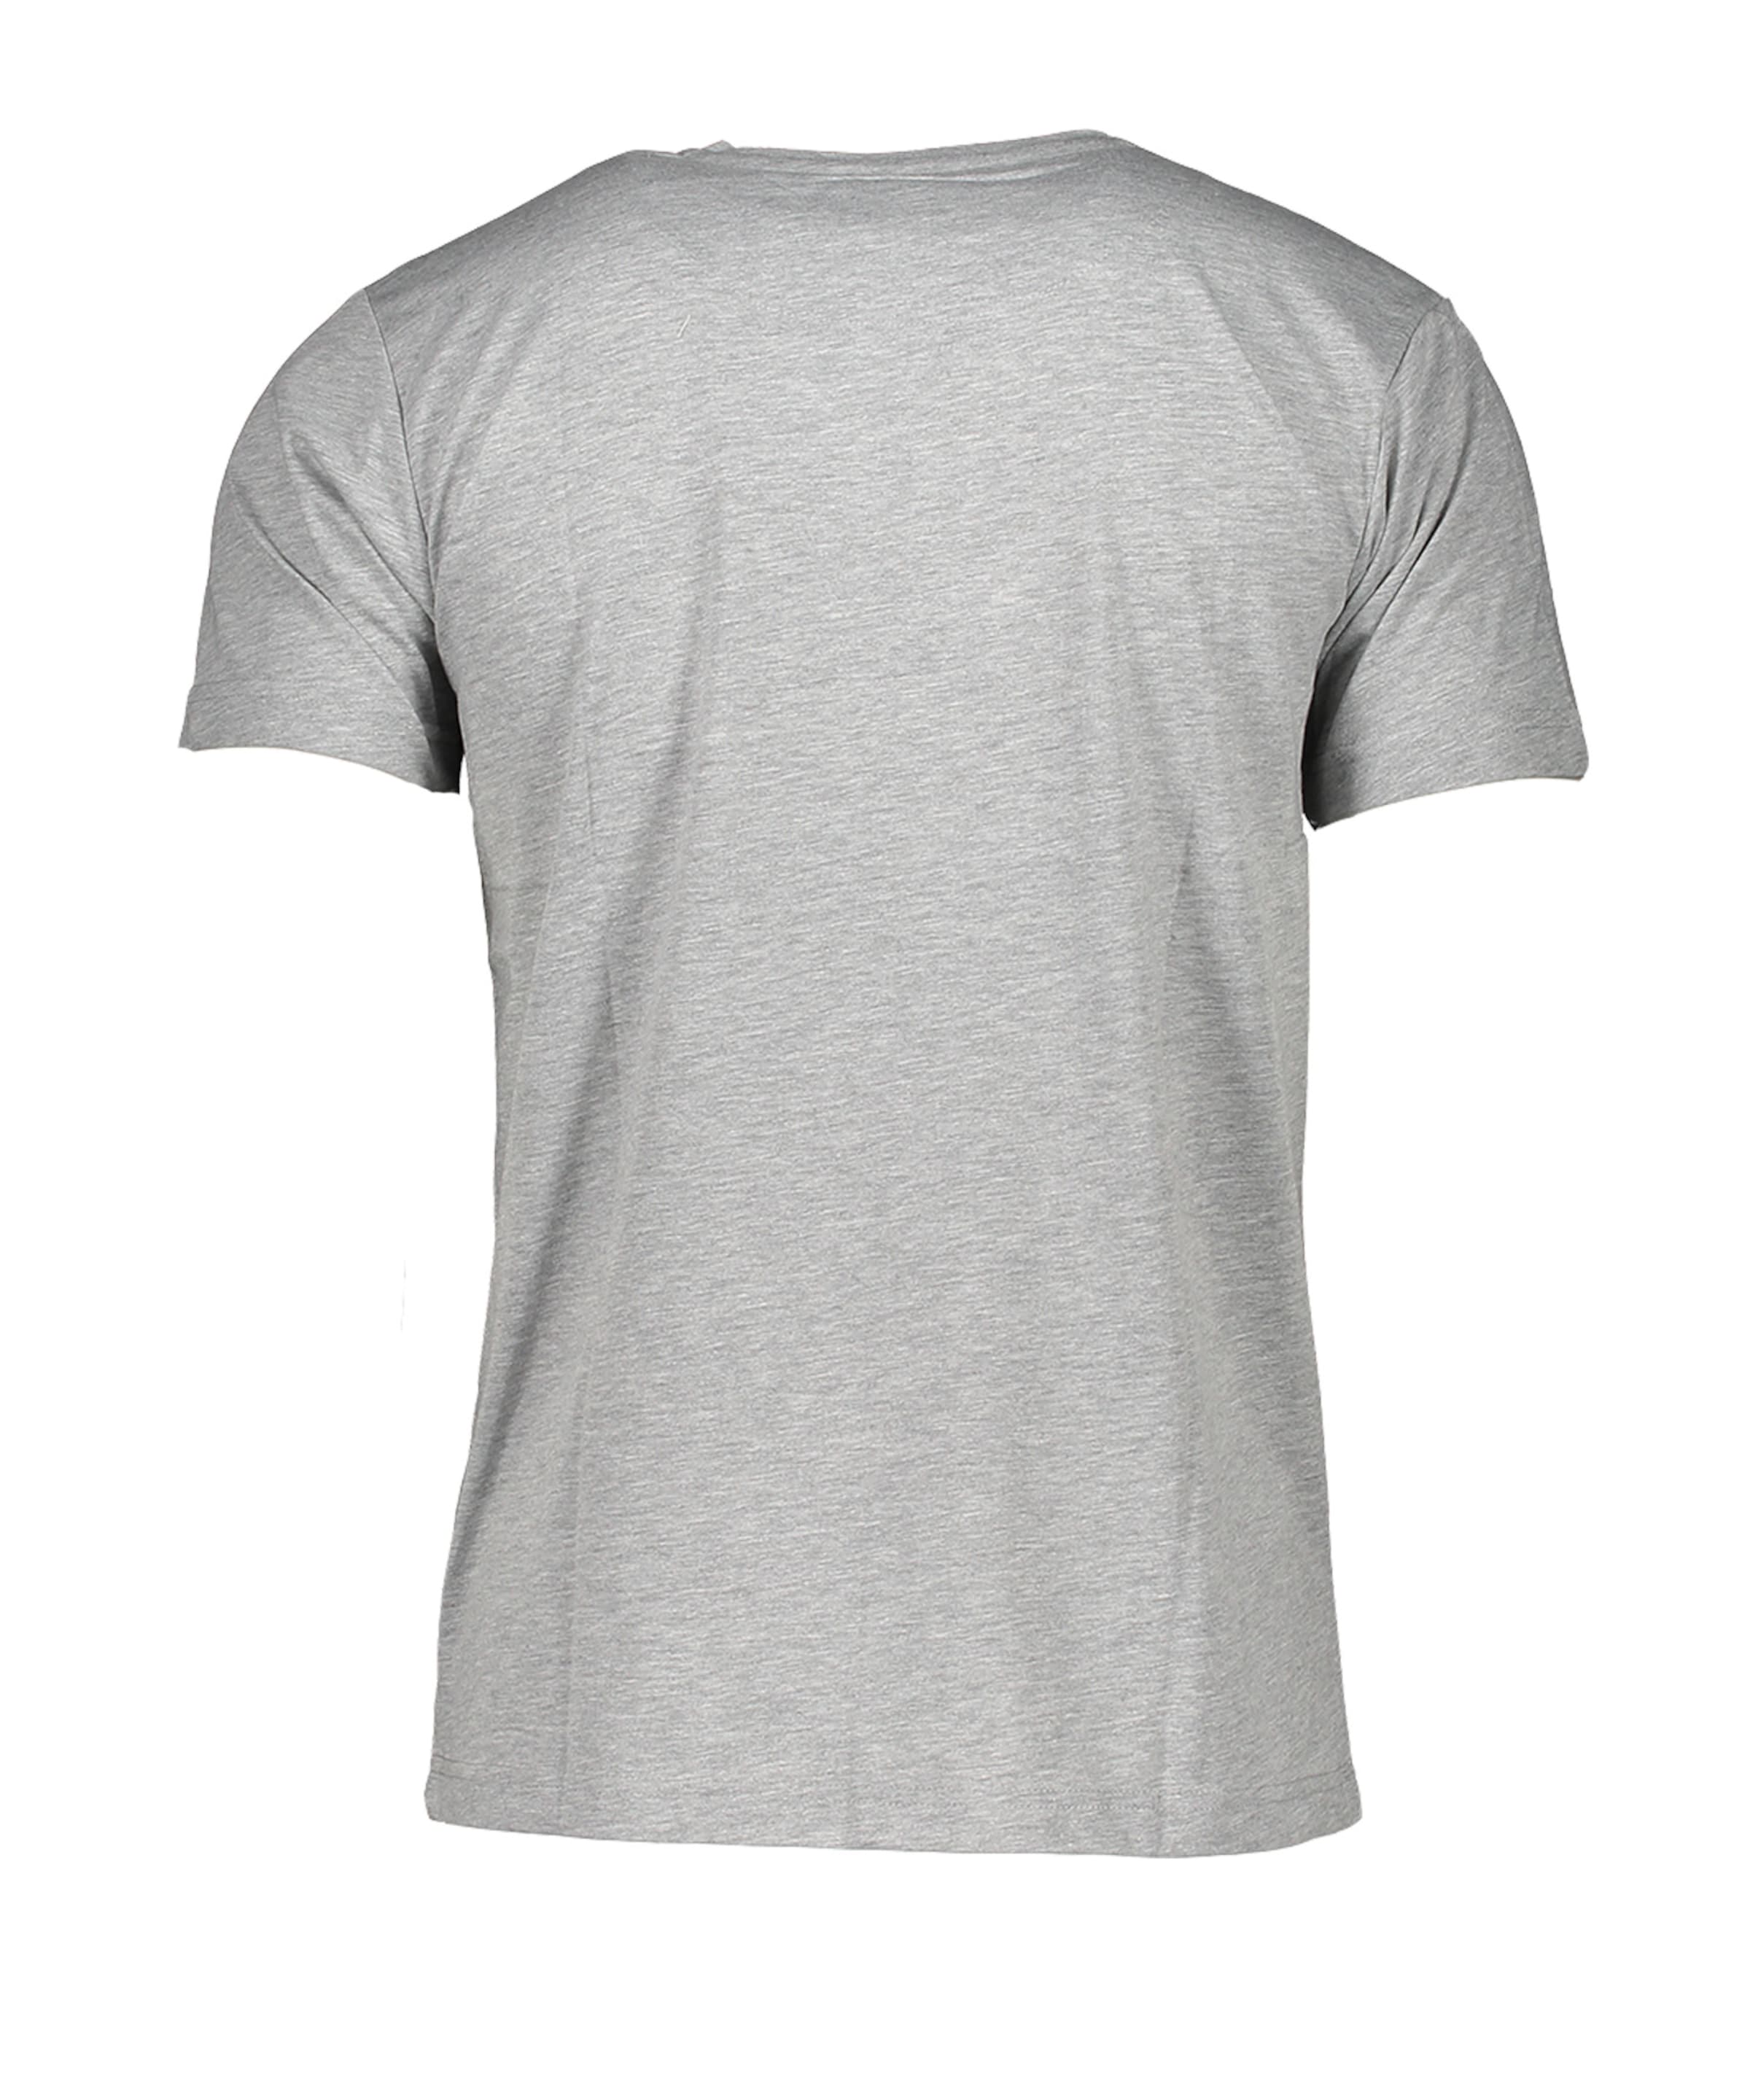 Männer Sportarten DFB T-Shirt in Grau - QR73628